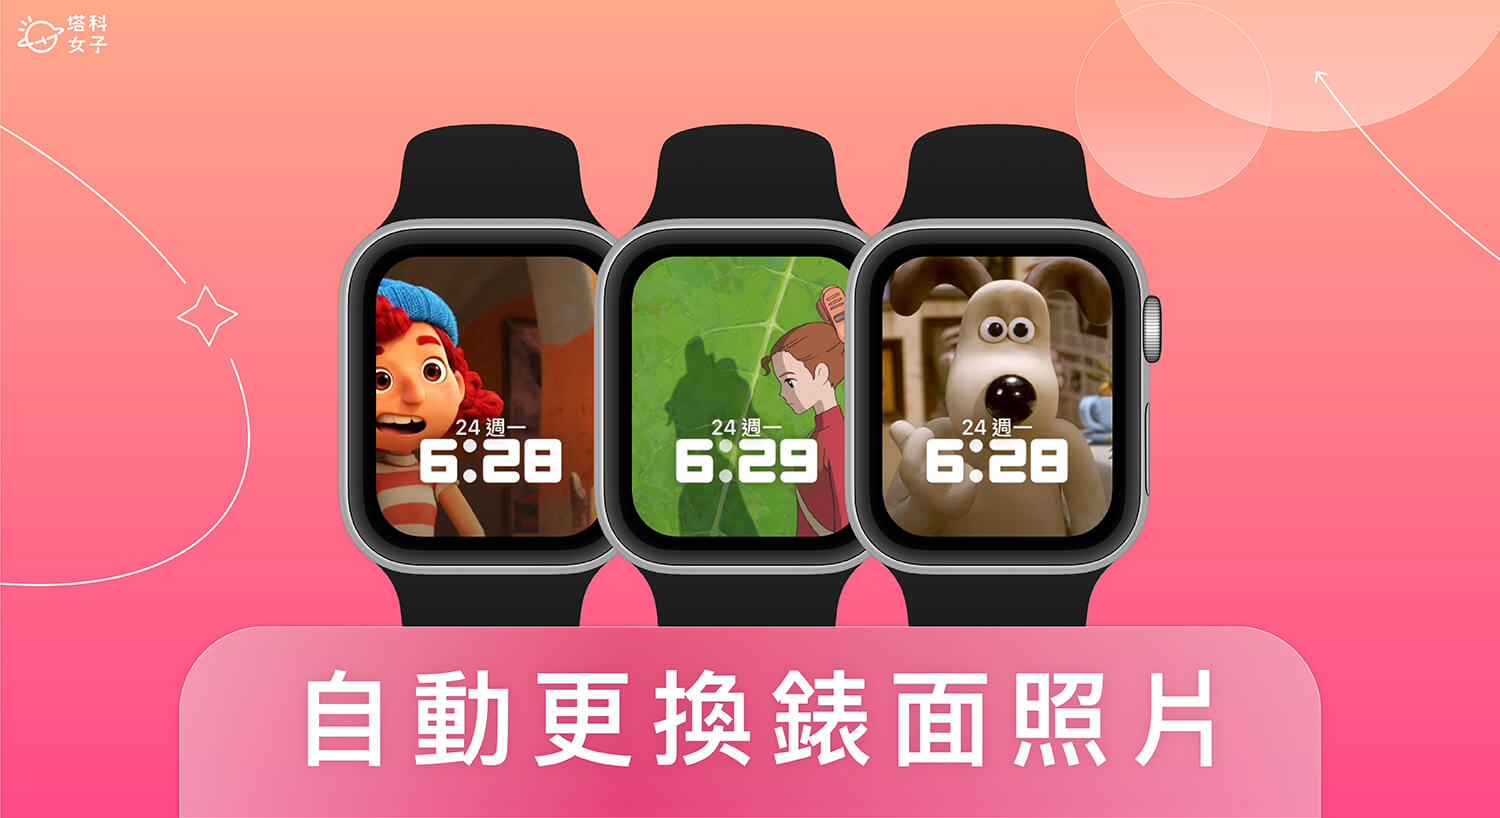 Apple Watch 照片錶面自動變換設定，抬起手腕即更改桌布照片